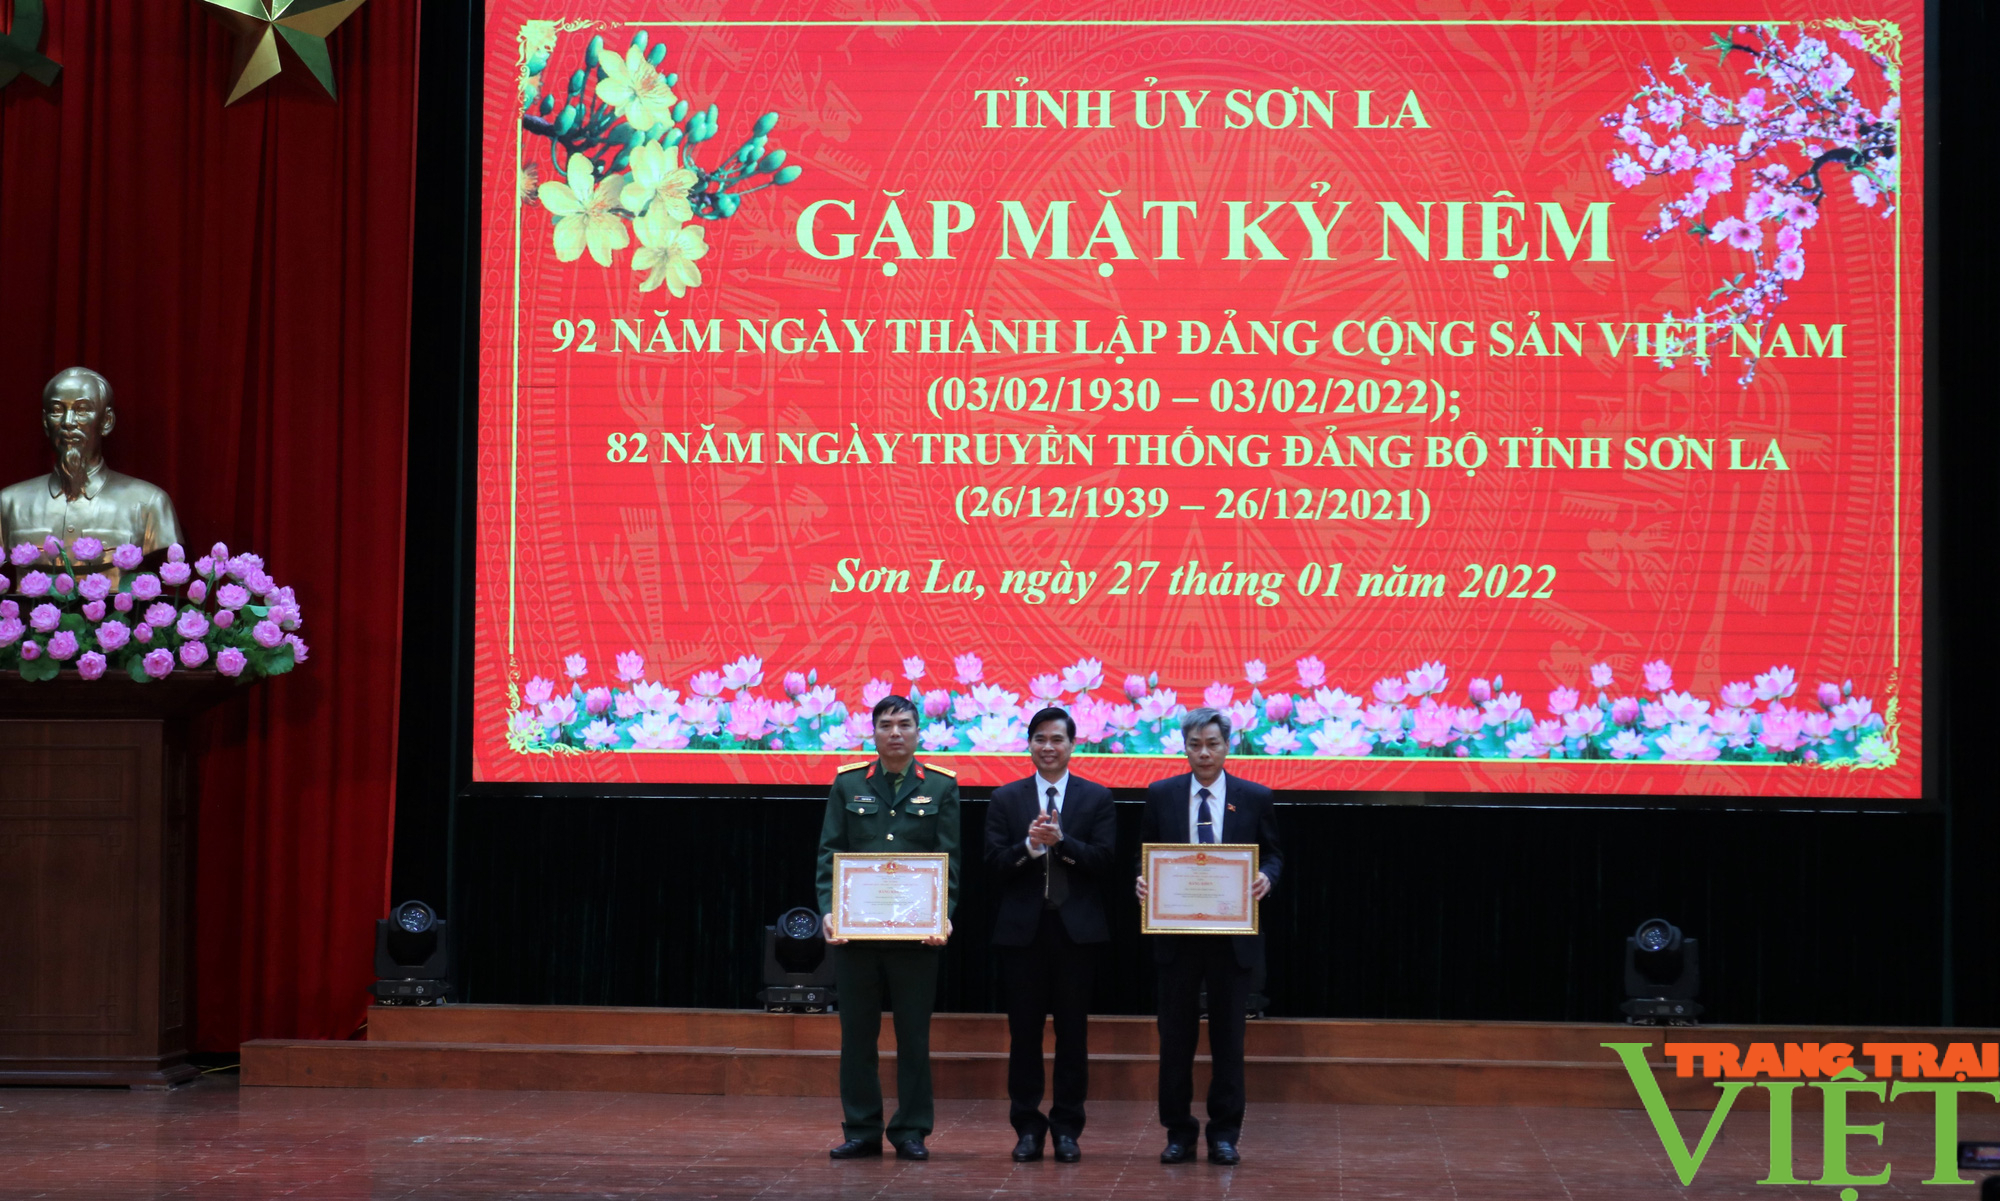 Sơn La: Gặp mặt kỷ niệm 92 năm thành lập Đảng Cộng sản Việt Nam và 82 năm Ngày truyền thống Đảng bộ tỉnh - Ảnh 8.